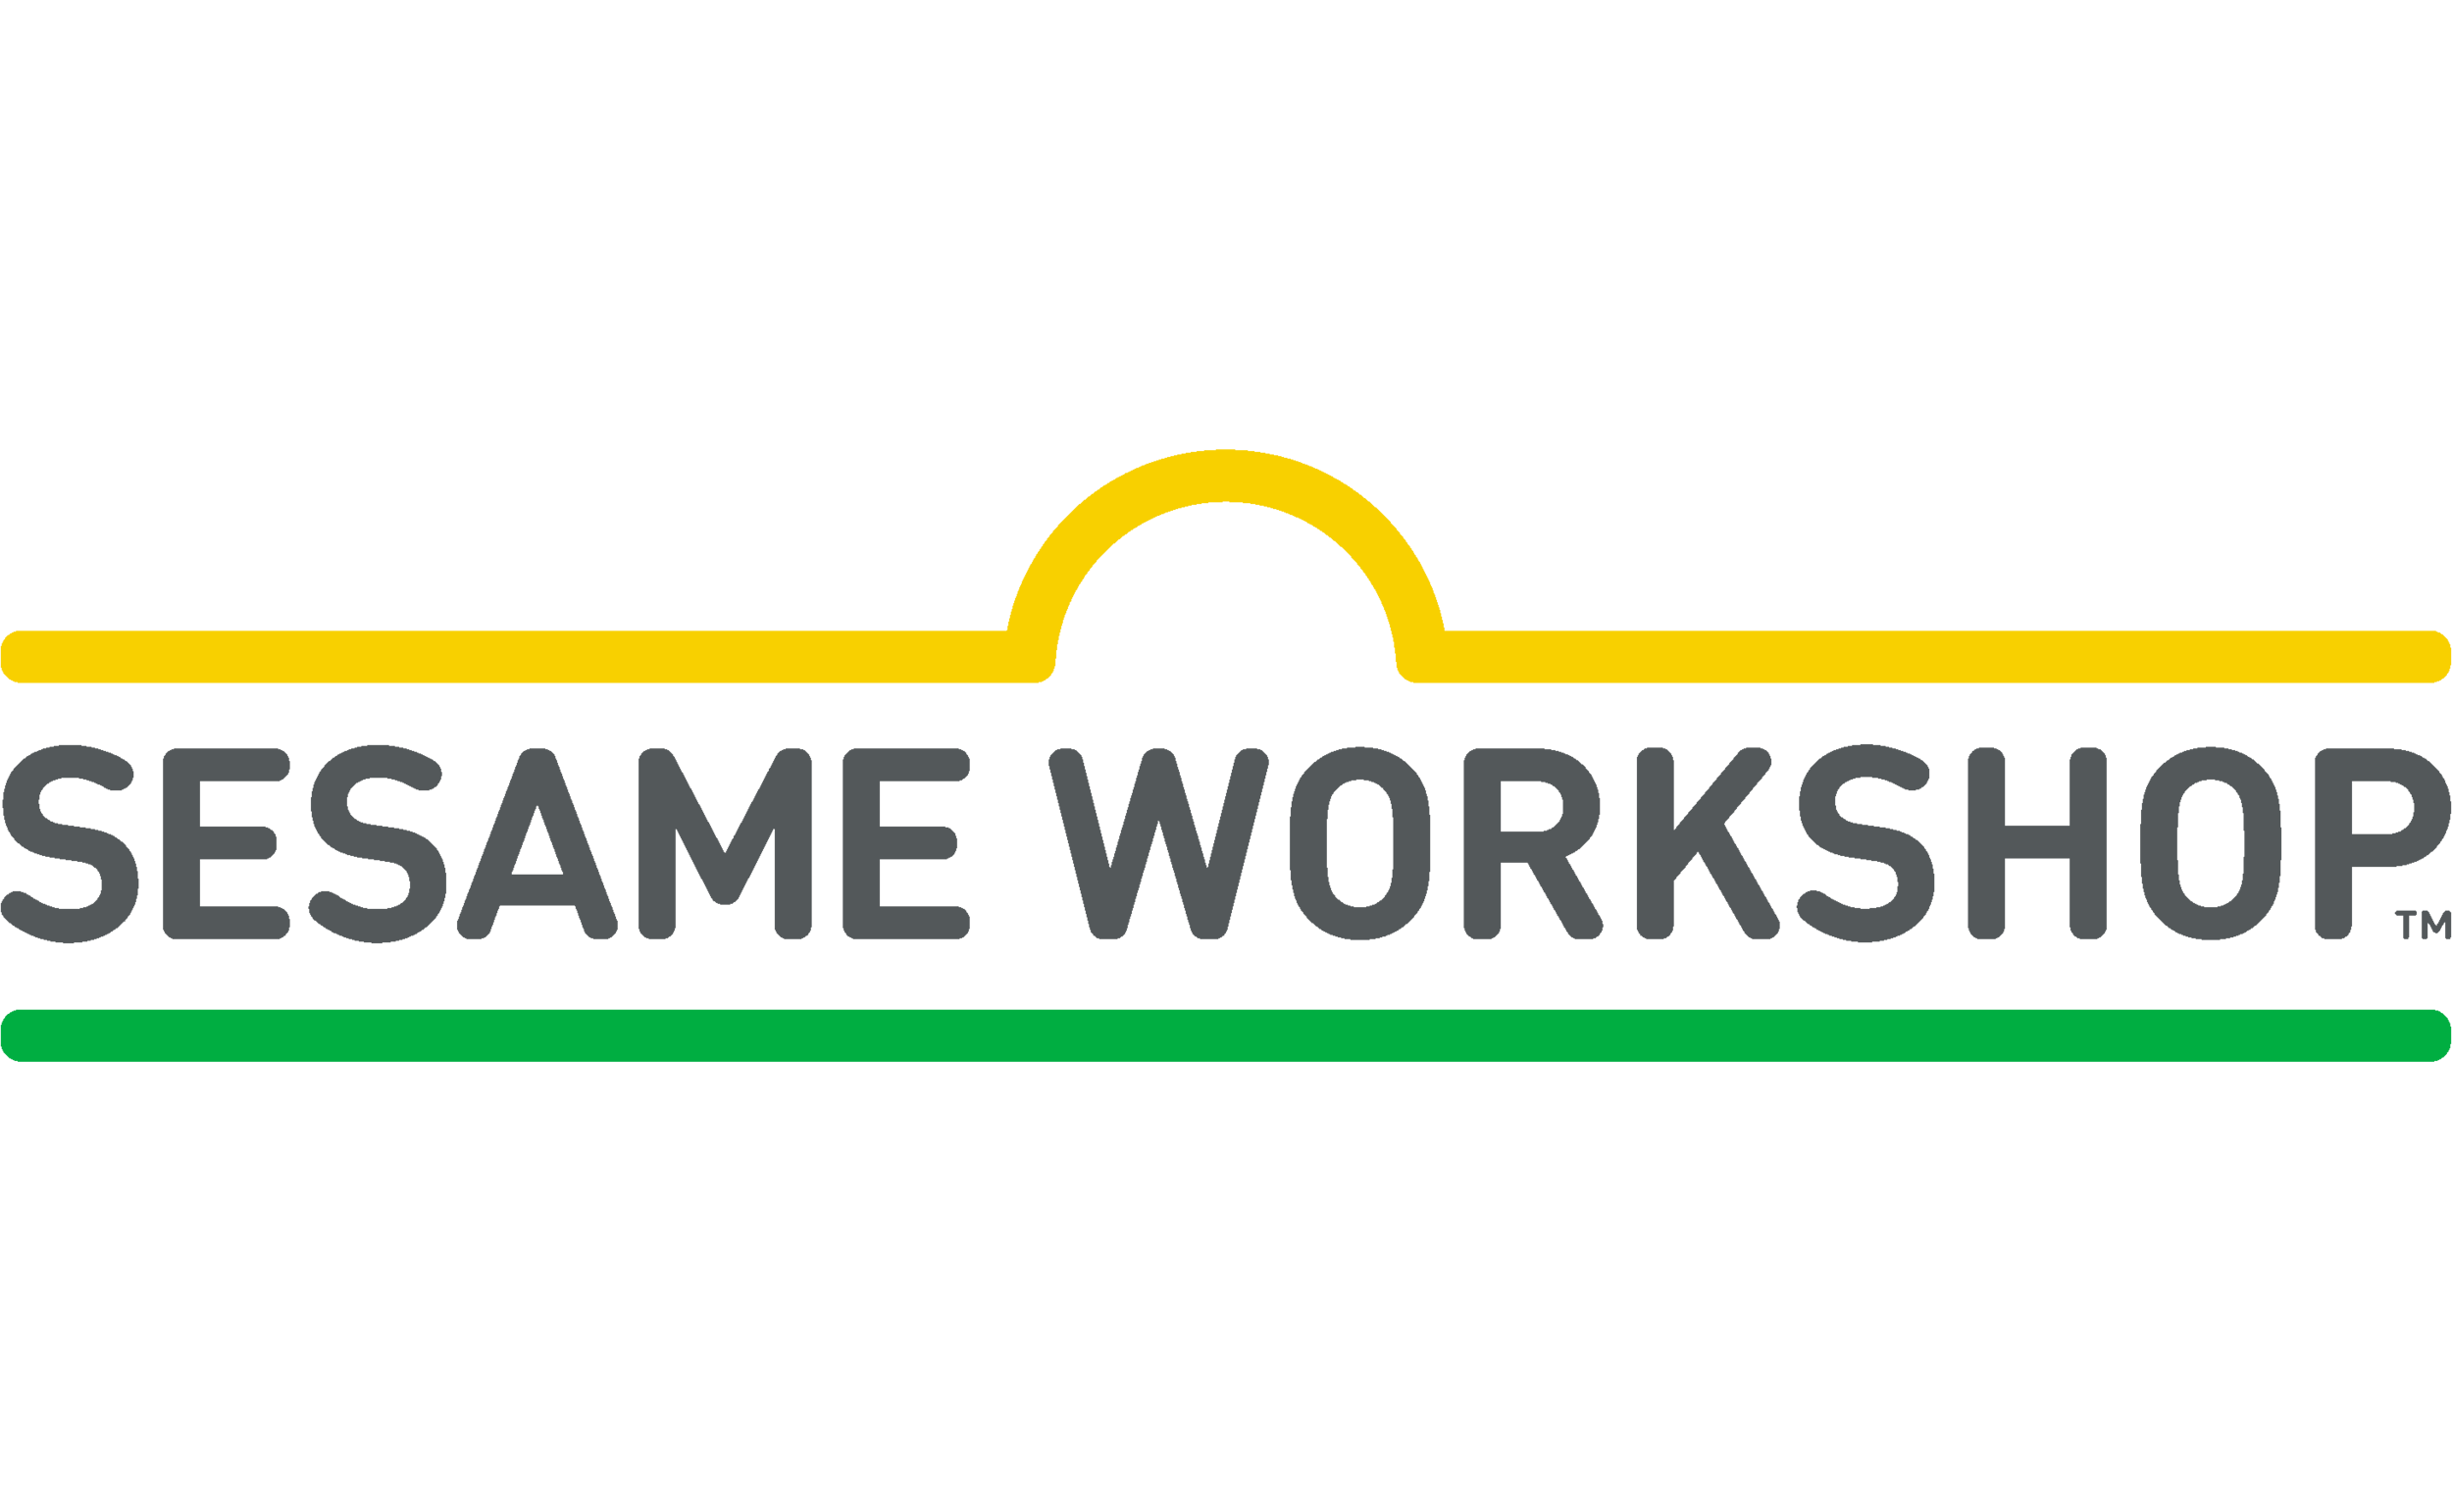 Sesame-Workshop-logo.png